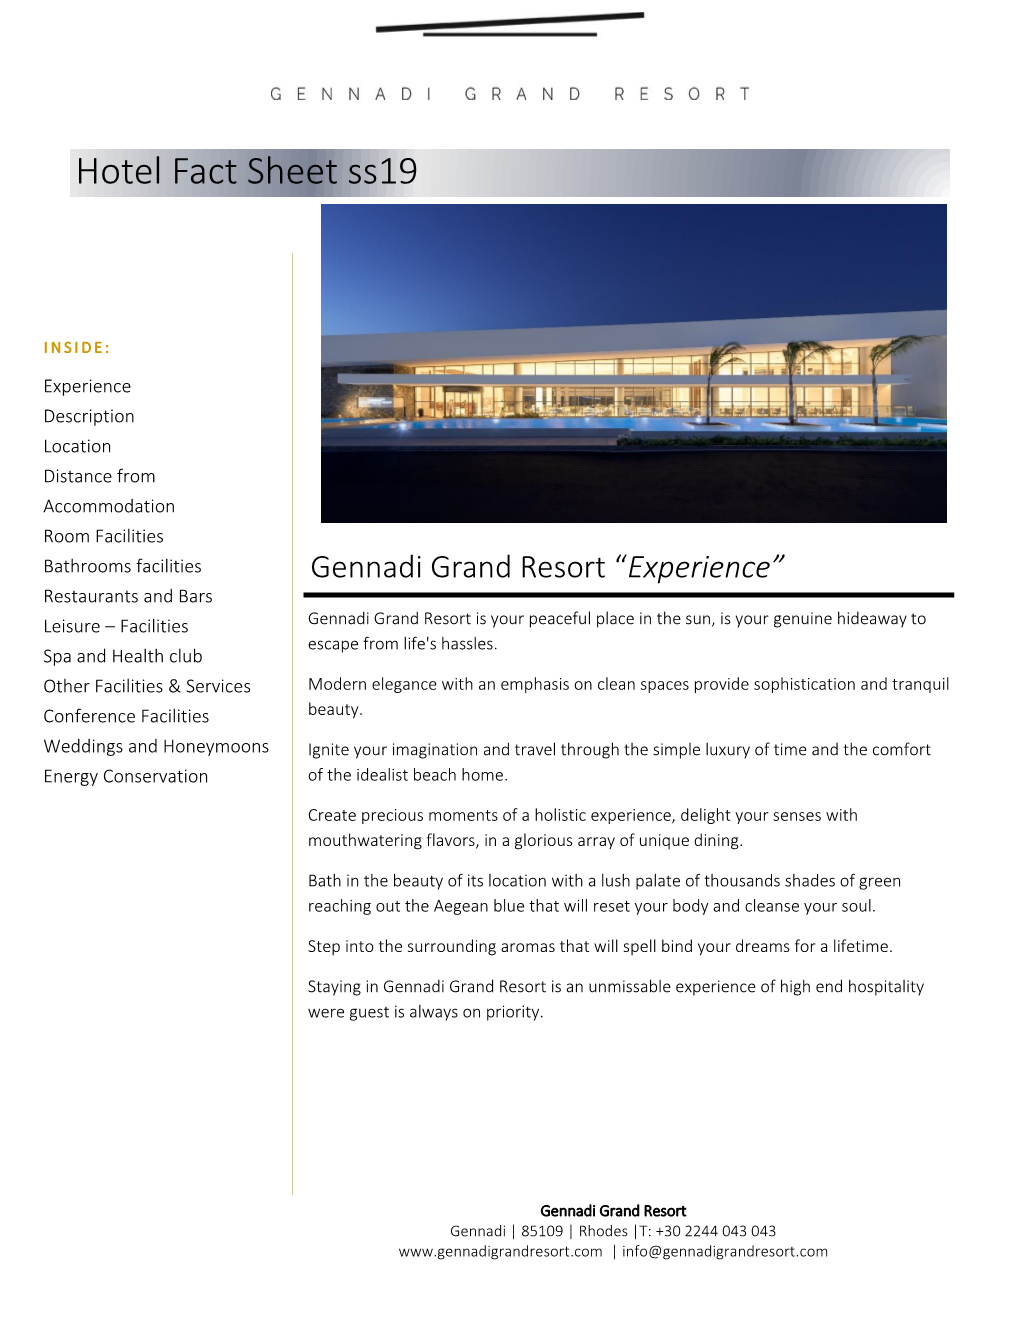 Hotel Fact Sheet Ss19